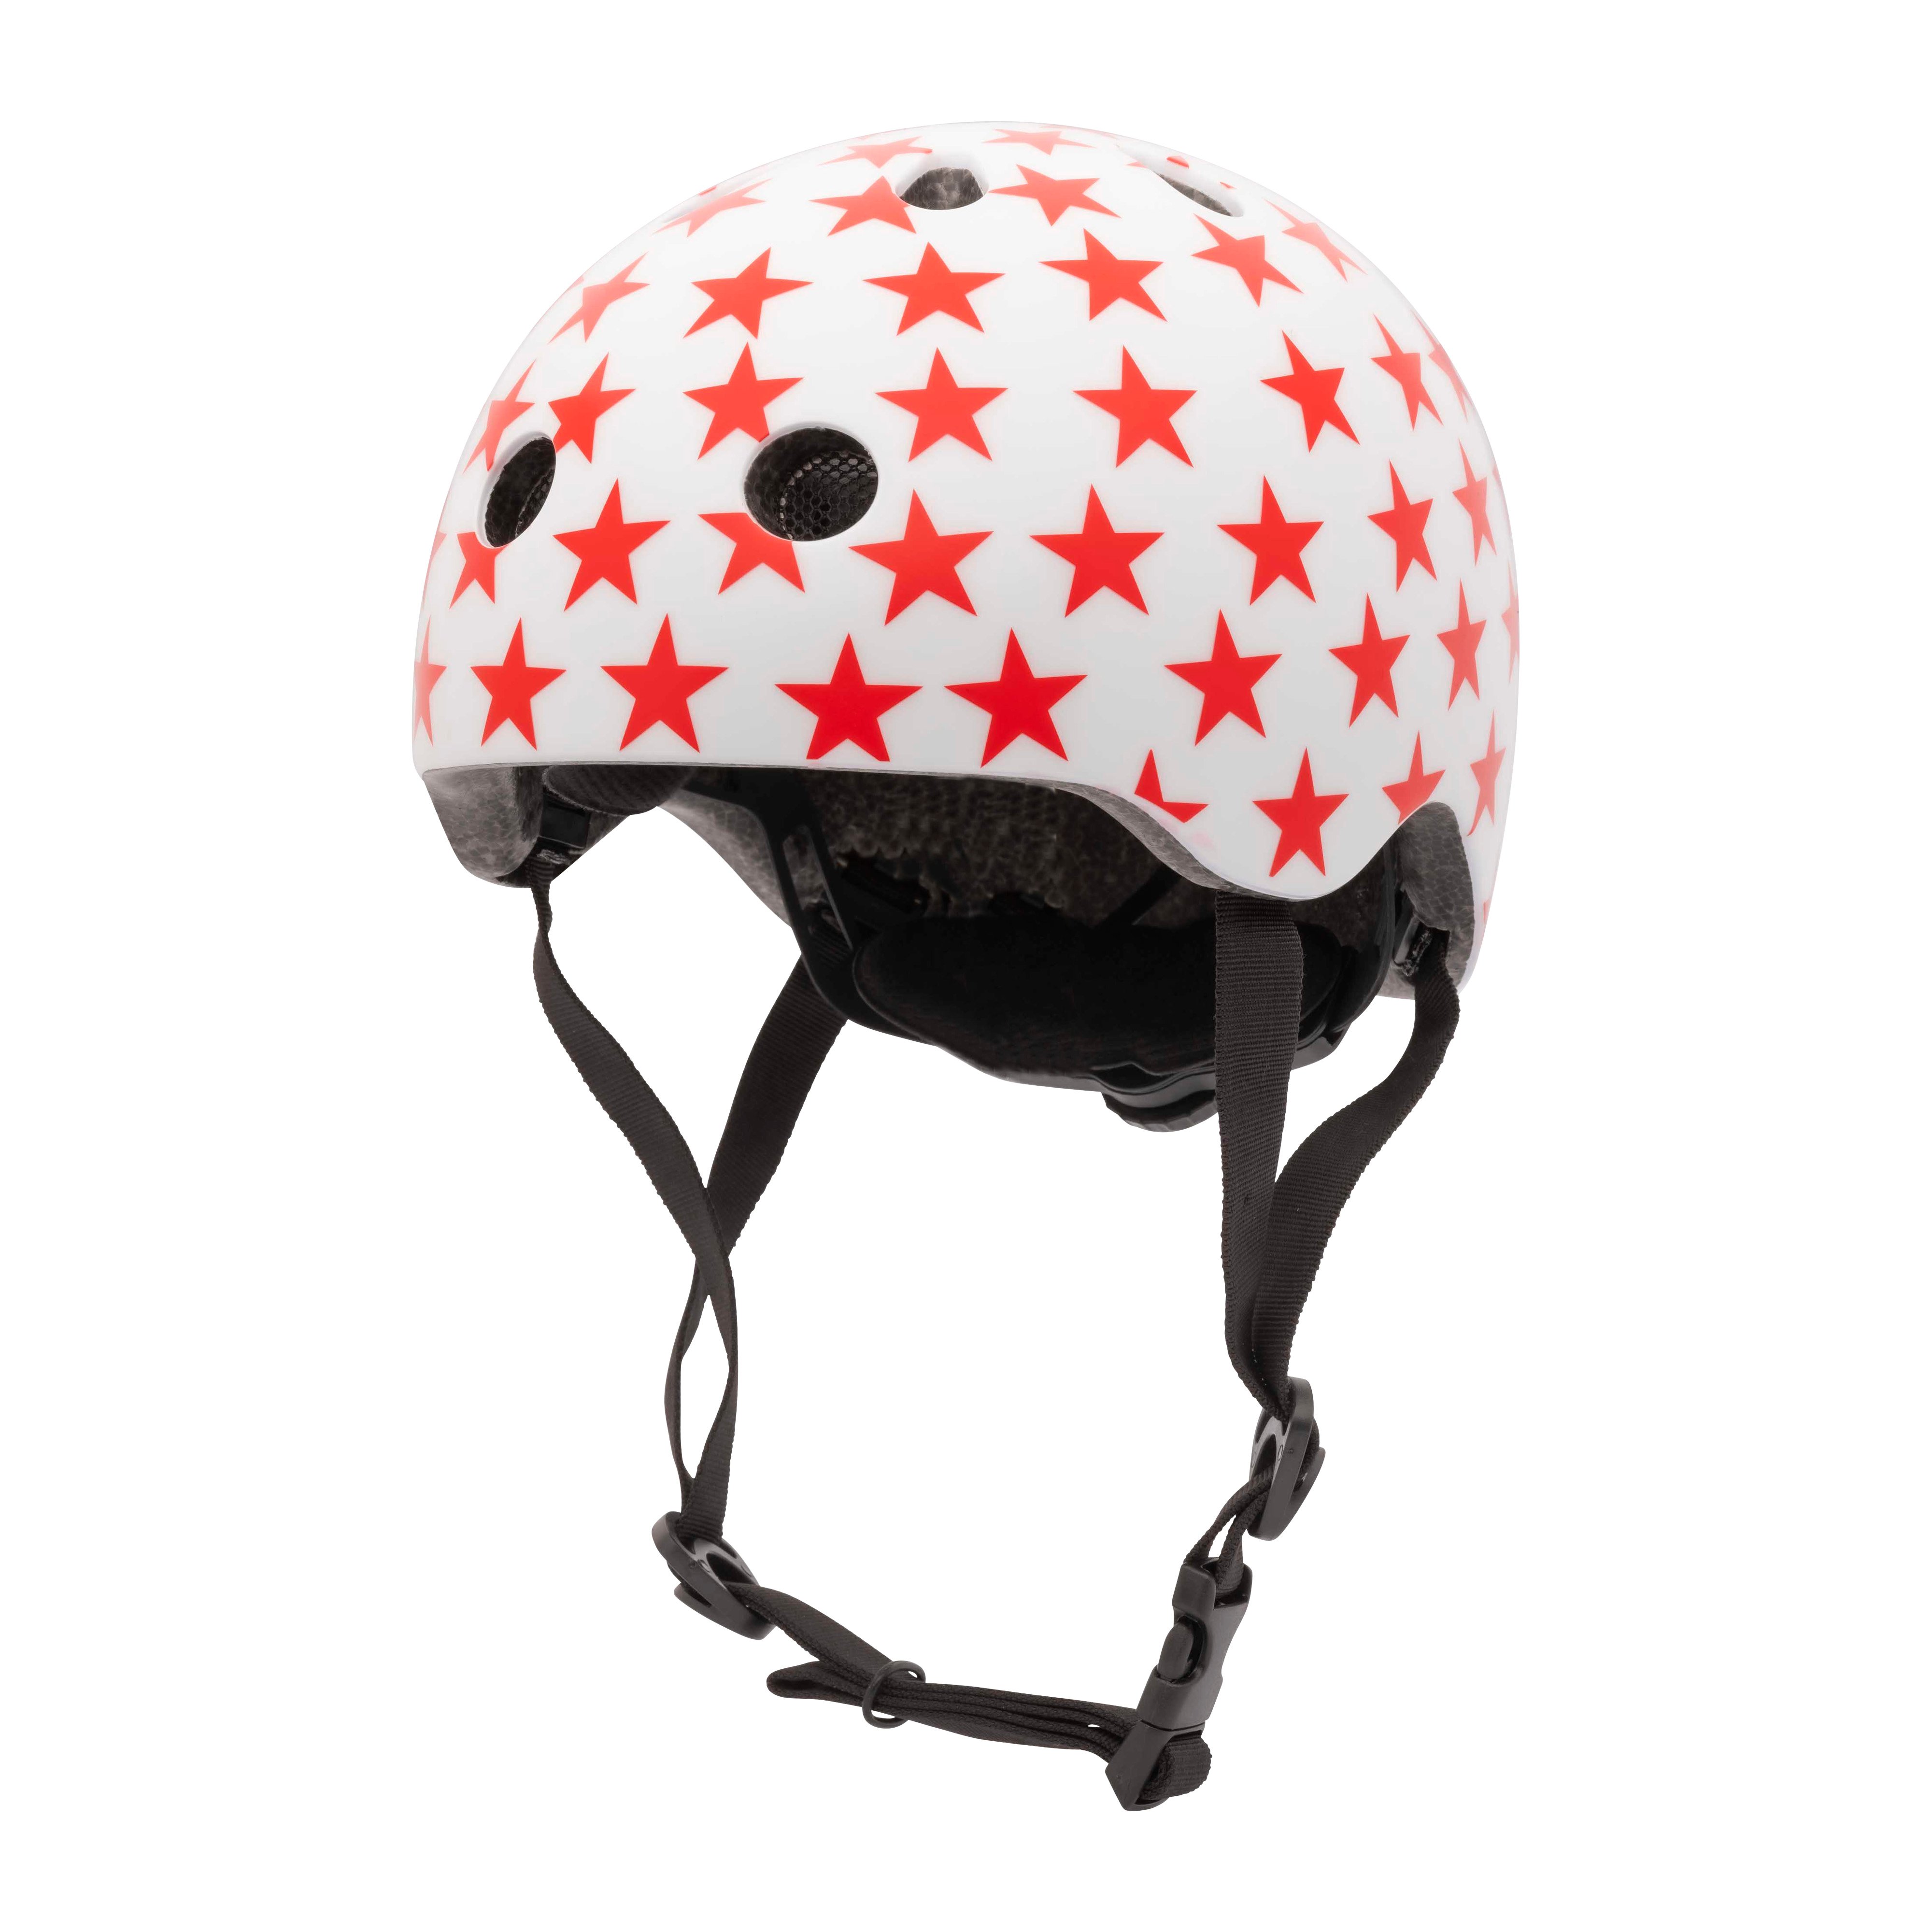 Велосипедный шлем Trybike Coconut, 44-51 см, белый с красным (COCO 4XS) - фото 1